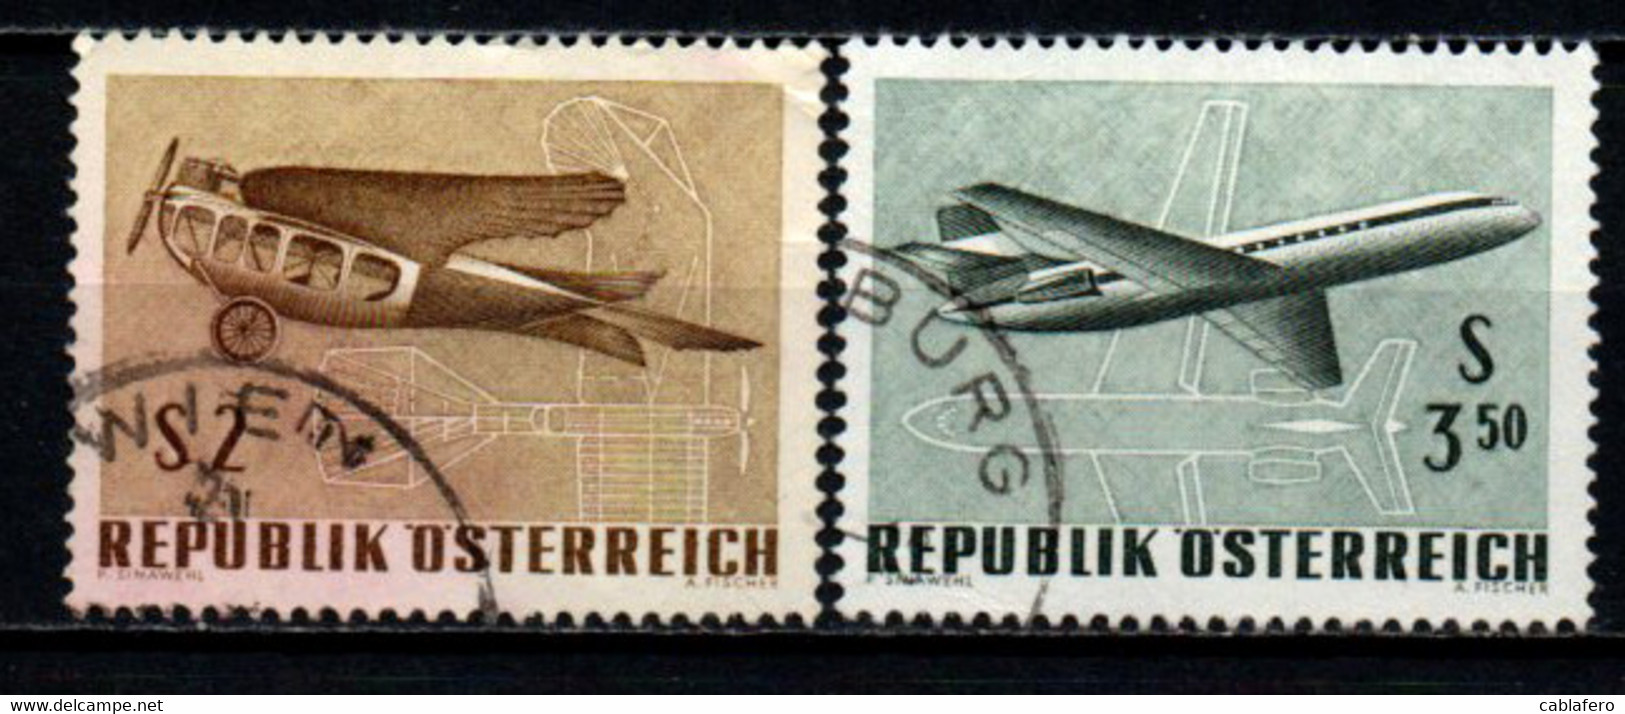 AUSTRIA - 1968 - ESPOSIZIONE INTERNAZIONALE DI POSTA AEREA A VIENNA - USATI - Gebruikt